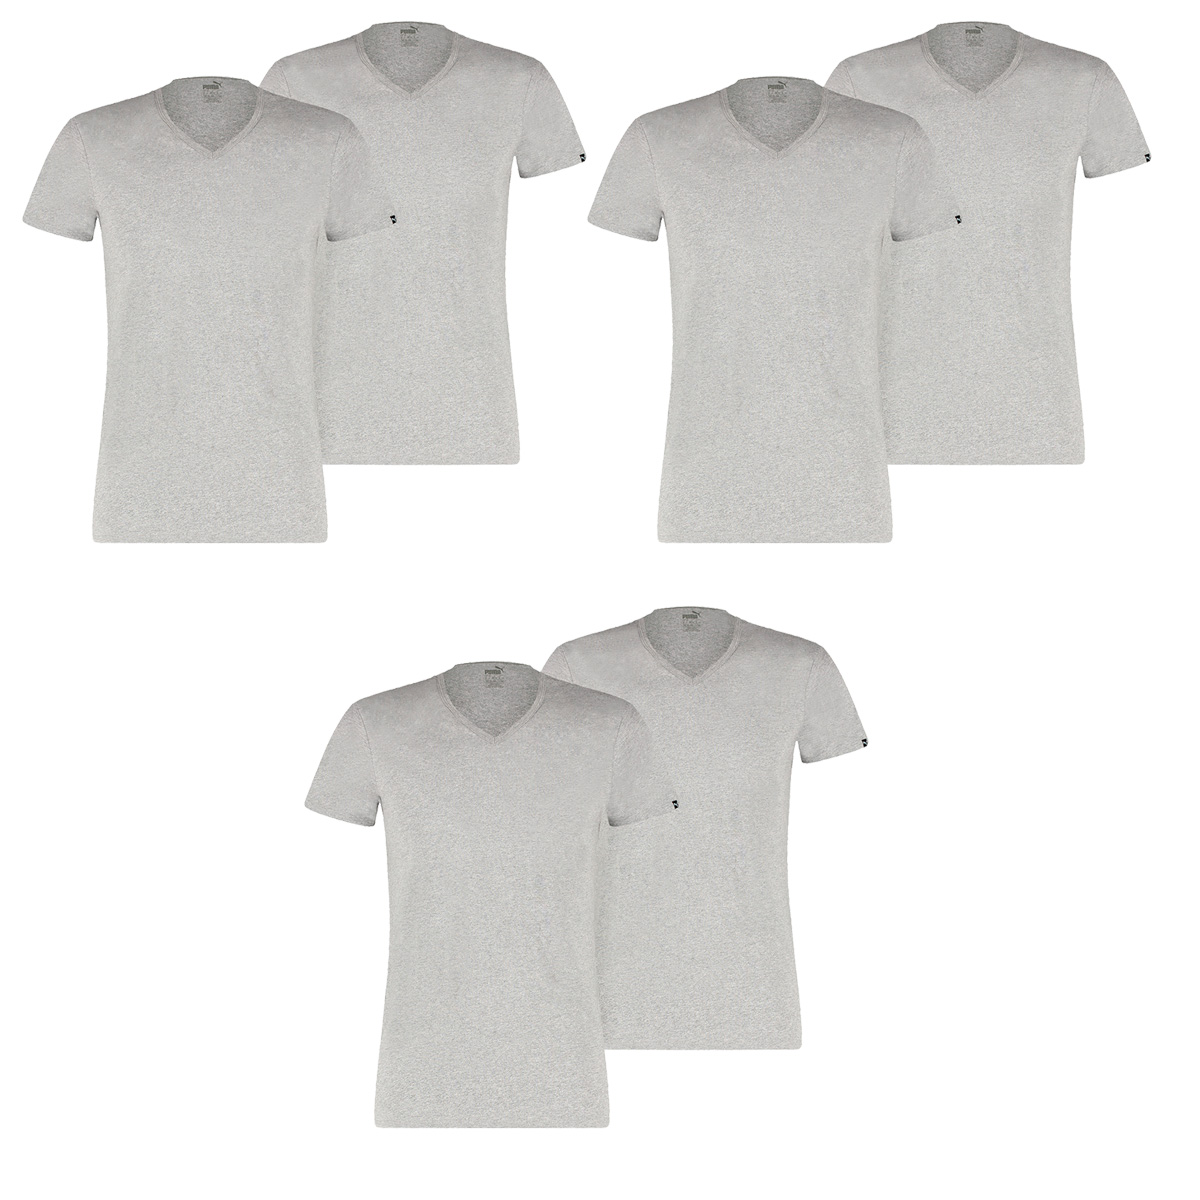 6 er Pack Puma Basic V Neck T-Shirt Men Herren Unterhemd V-Ausschnitt